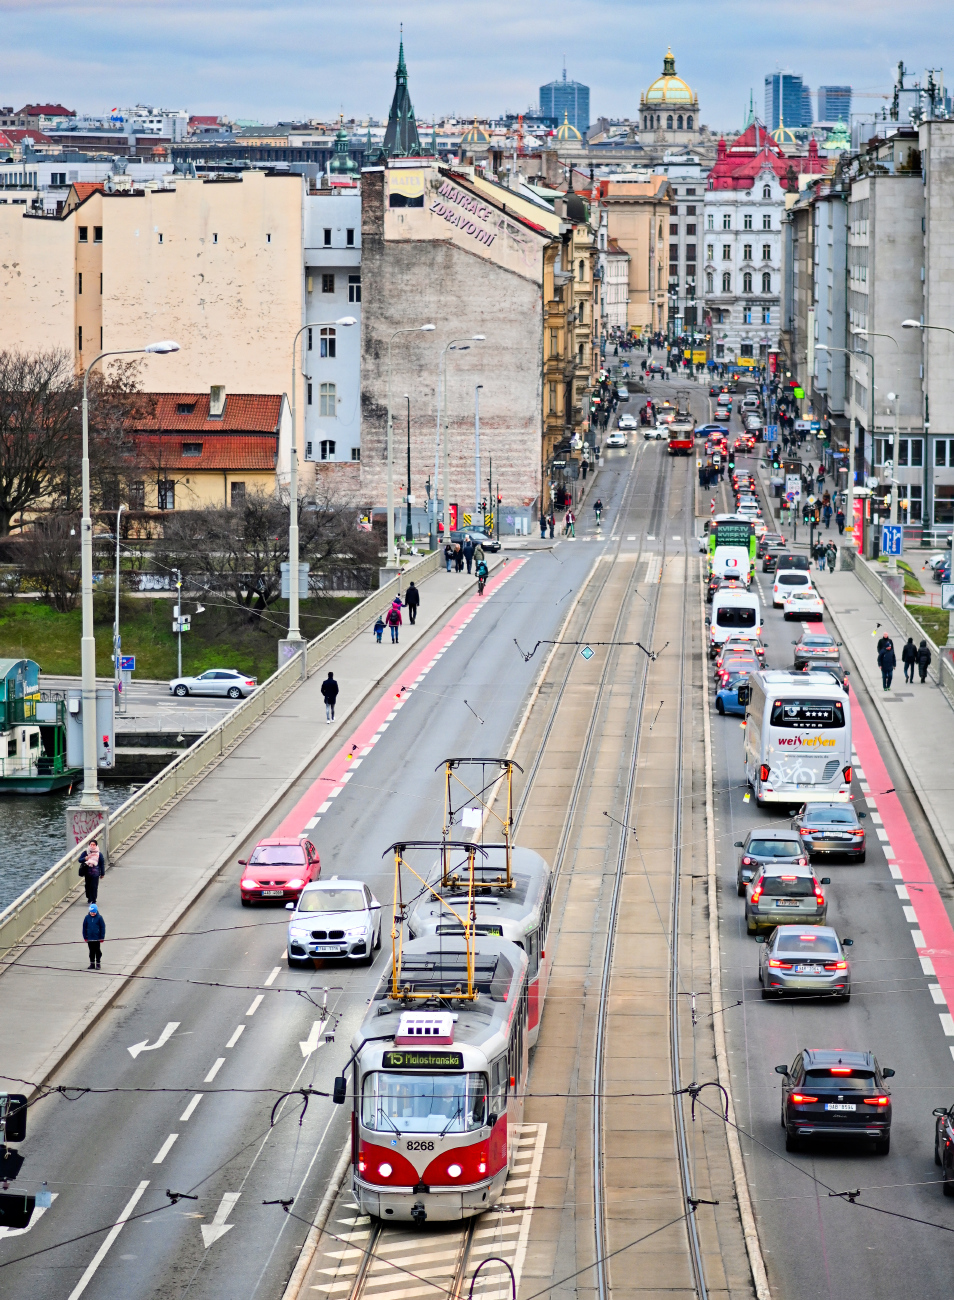 Praga — Bridges; Praga — Tram Lines and Infrastructure